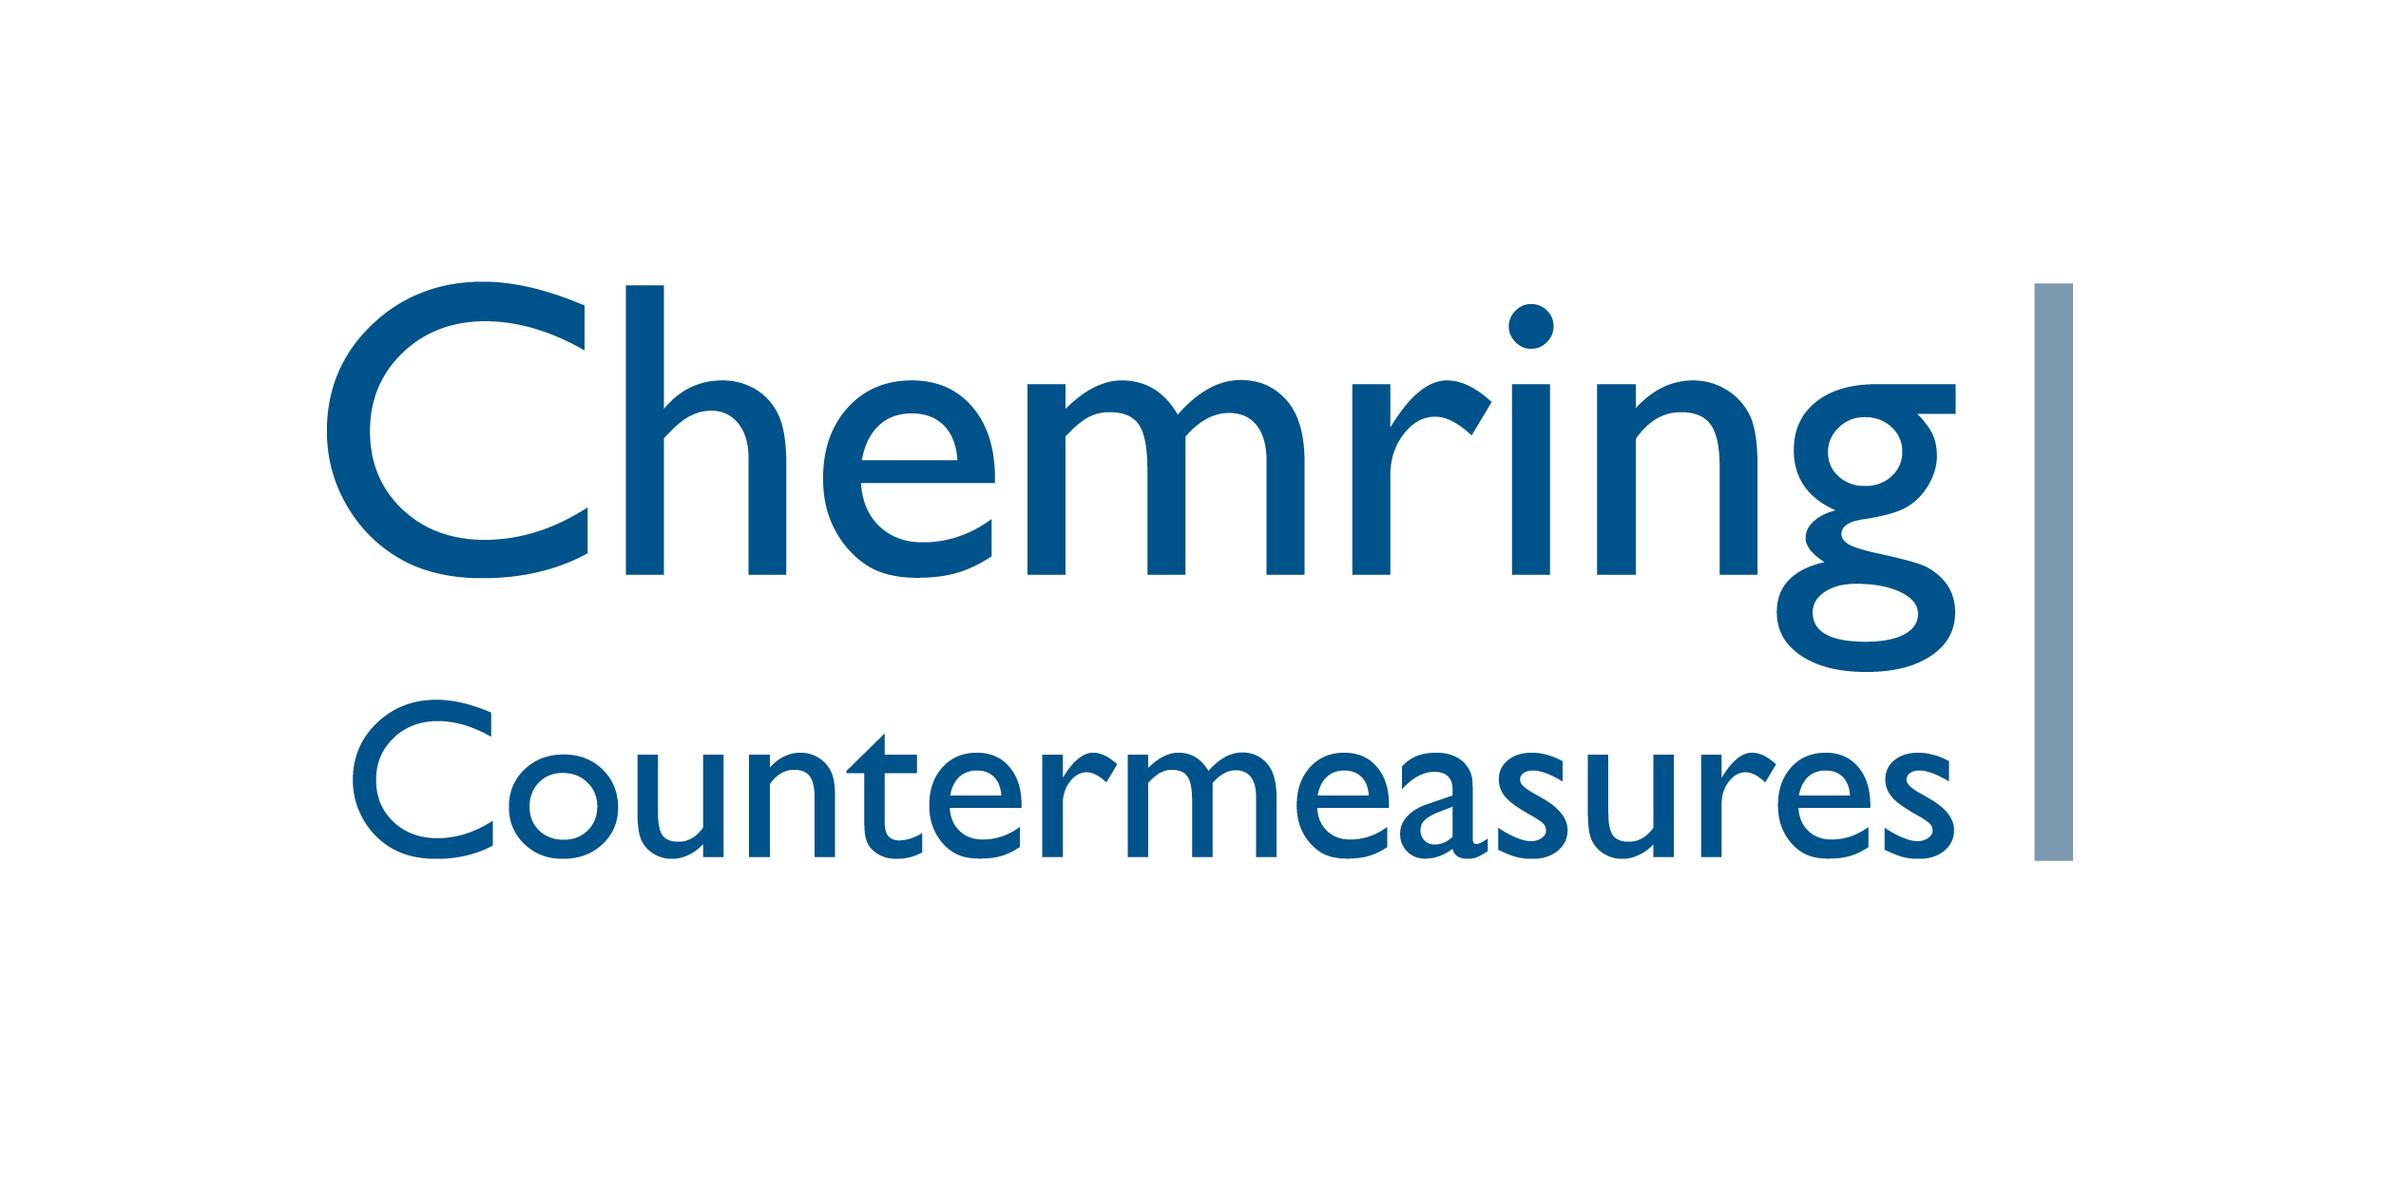 Chemring Countermeasures Ltd